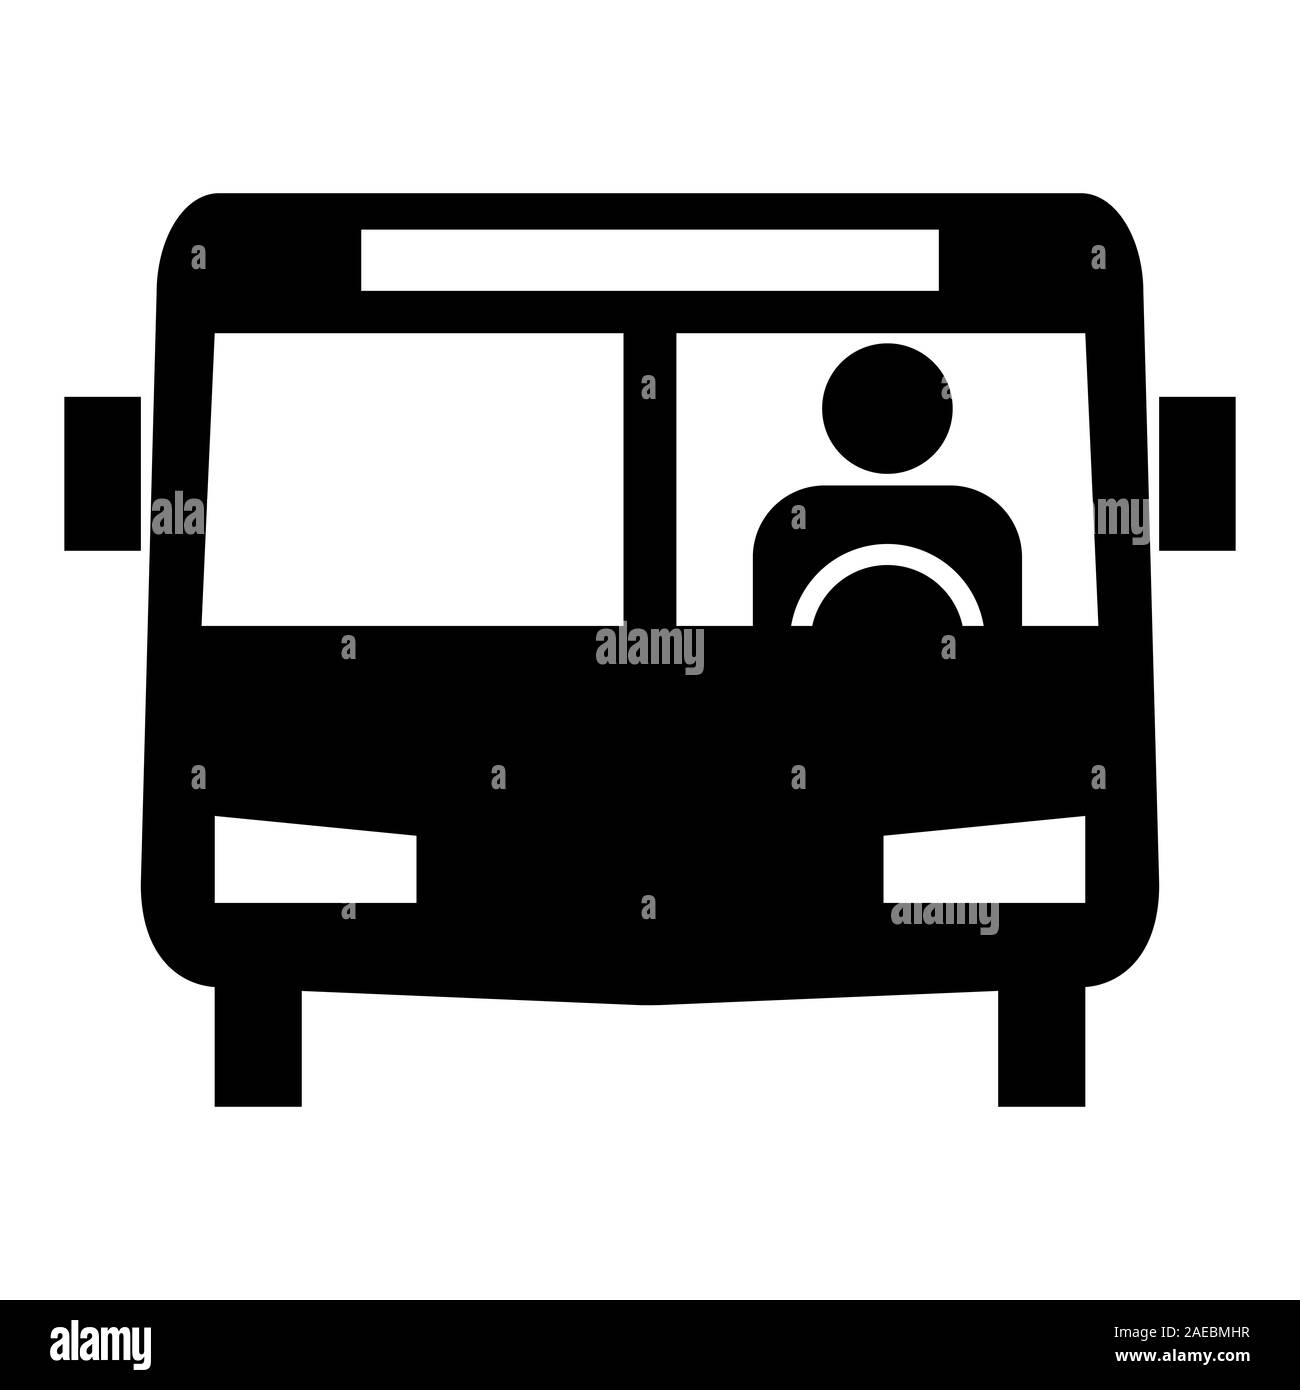 L'icône de l'autobus. L'icône d'autobus en noir et blanc avec pilote pour la carte, shedulle et autres transports en commun la carte d'interface utilisateur Banque D'Images